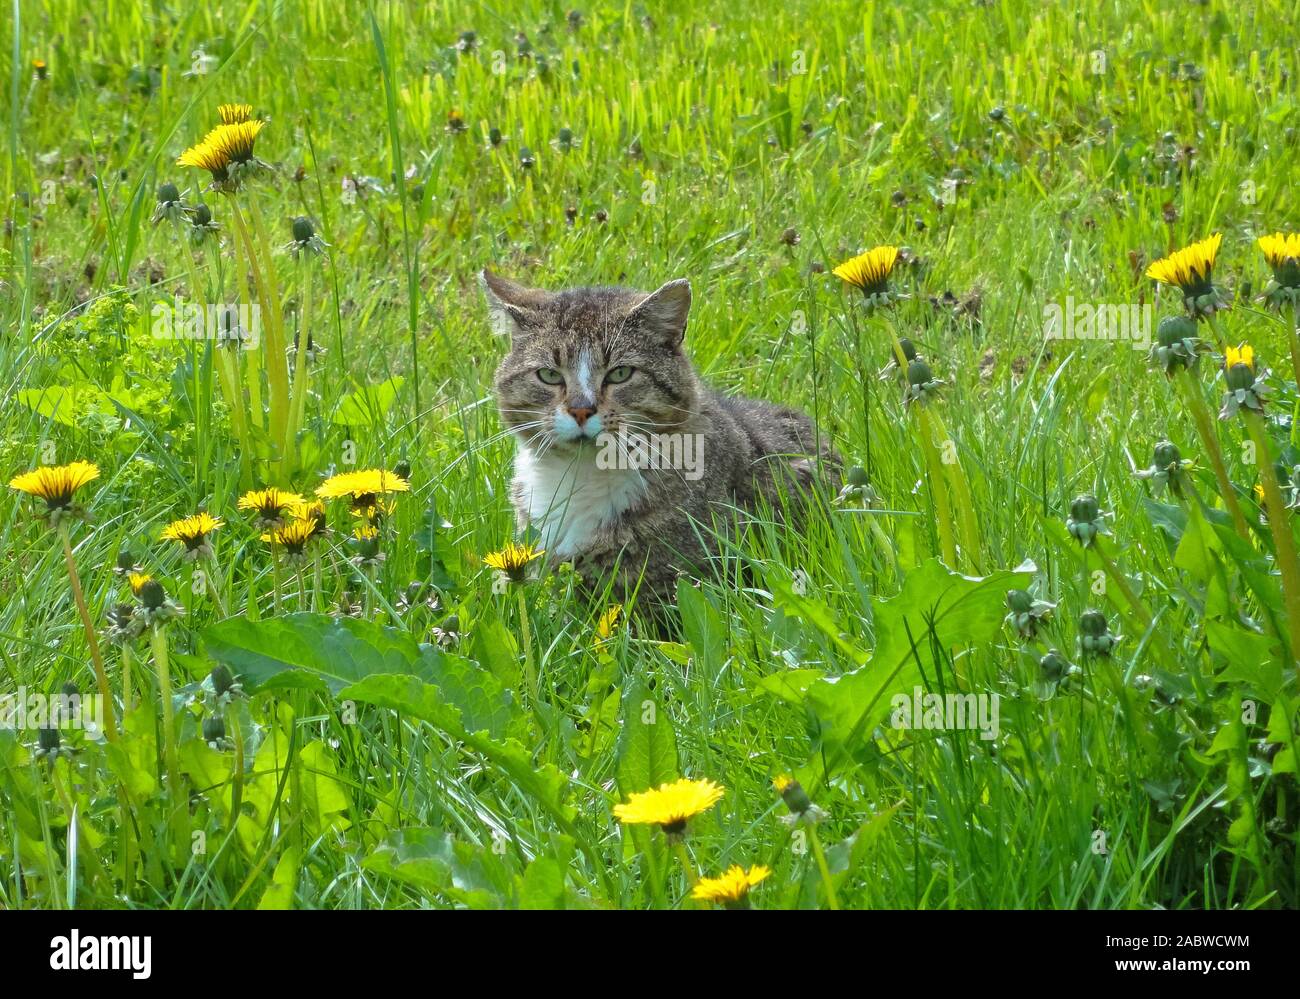 Misstrauische Katze, (suspicious cat), Stock Photo